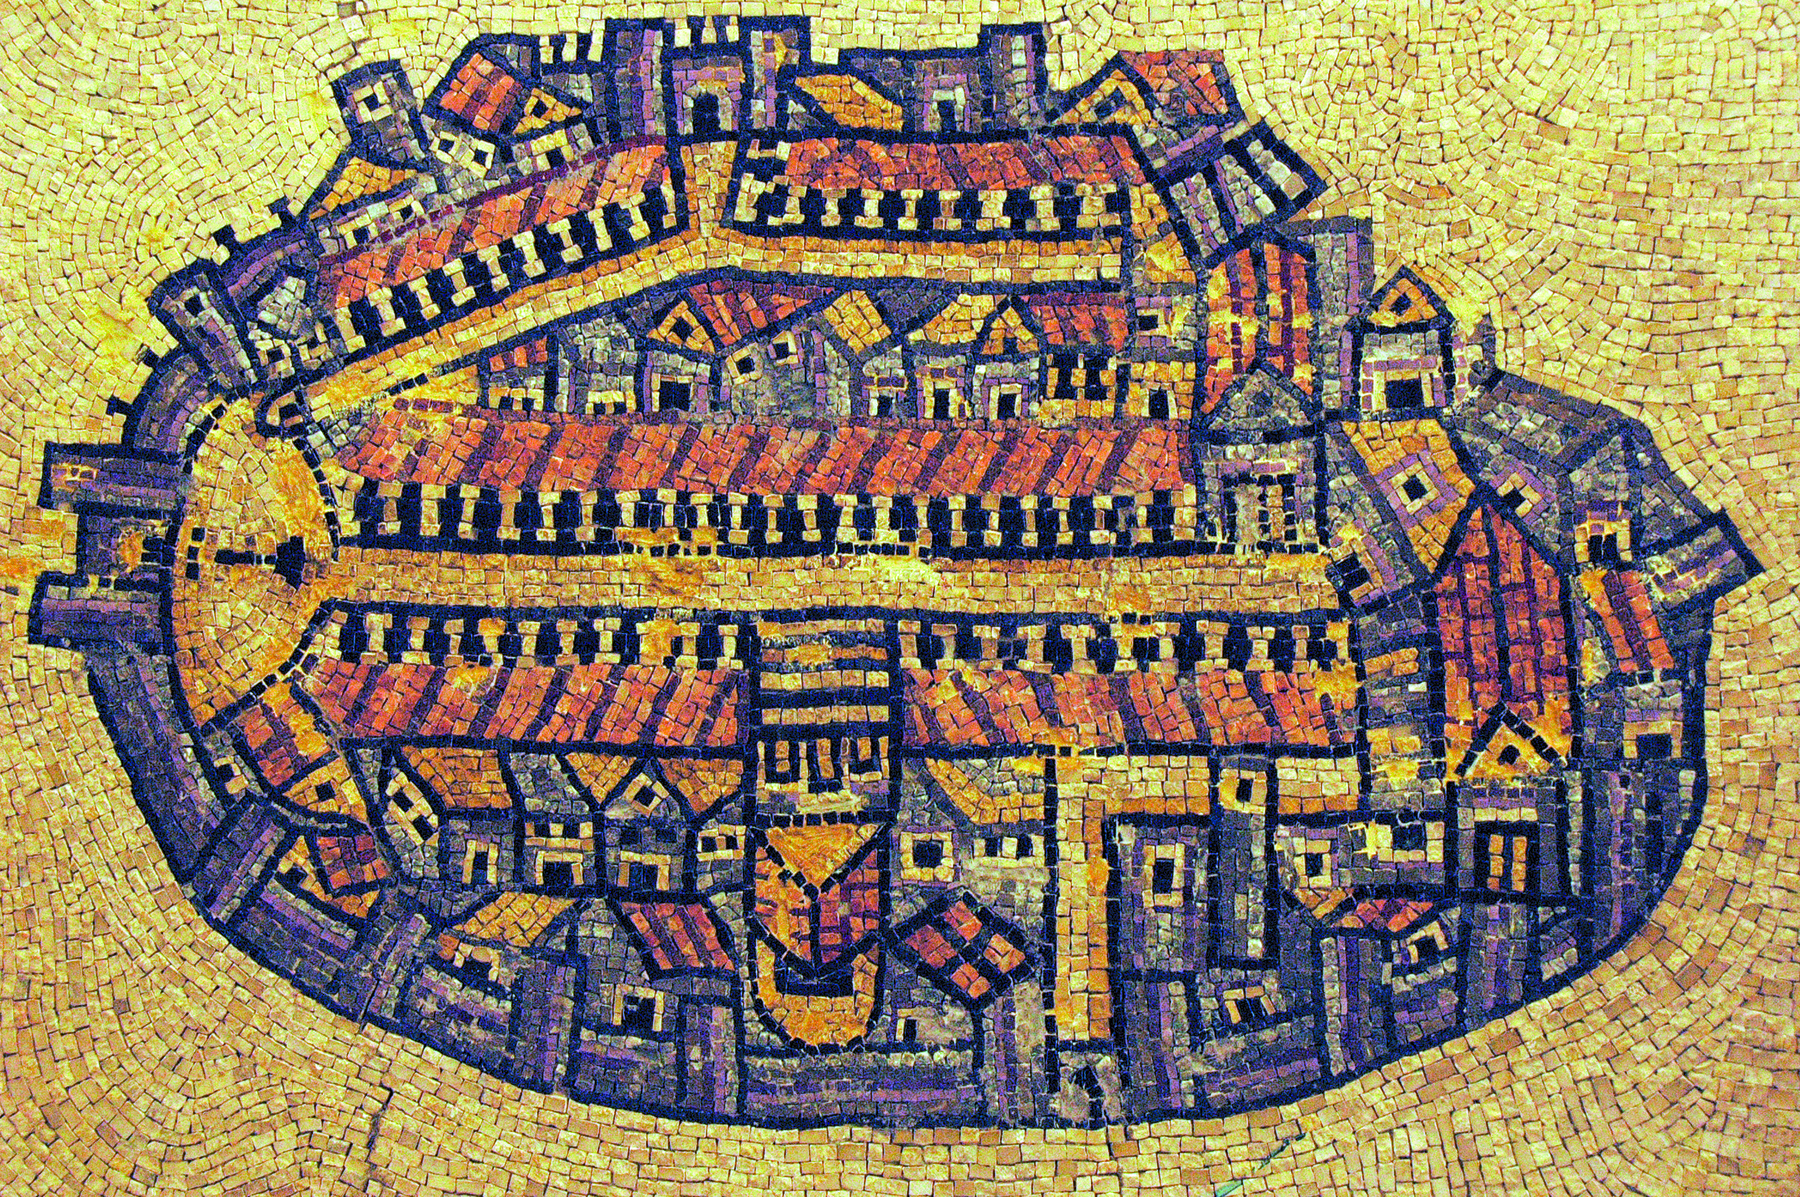 Fotografia. Reprodução em mosaico de pedras do mapa de uma cidade. O formato é semelhante ao de um círculo achatado e o fundo é amarelado. É possível observar uma espécie de entrada, à esquerda, uma rua central horizontal e telhados e casas.